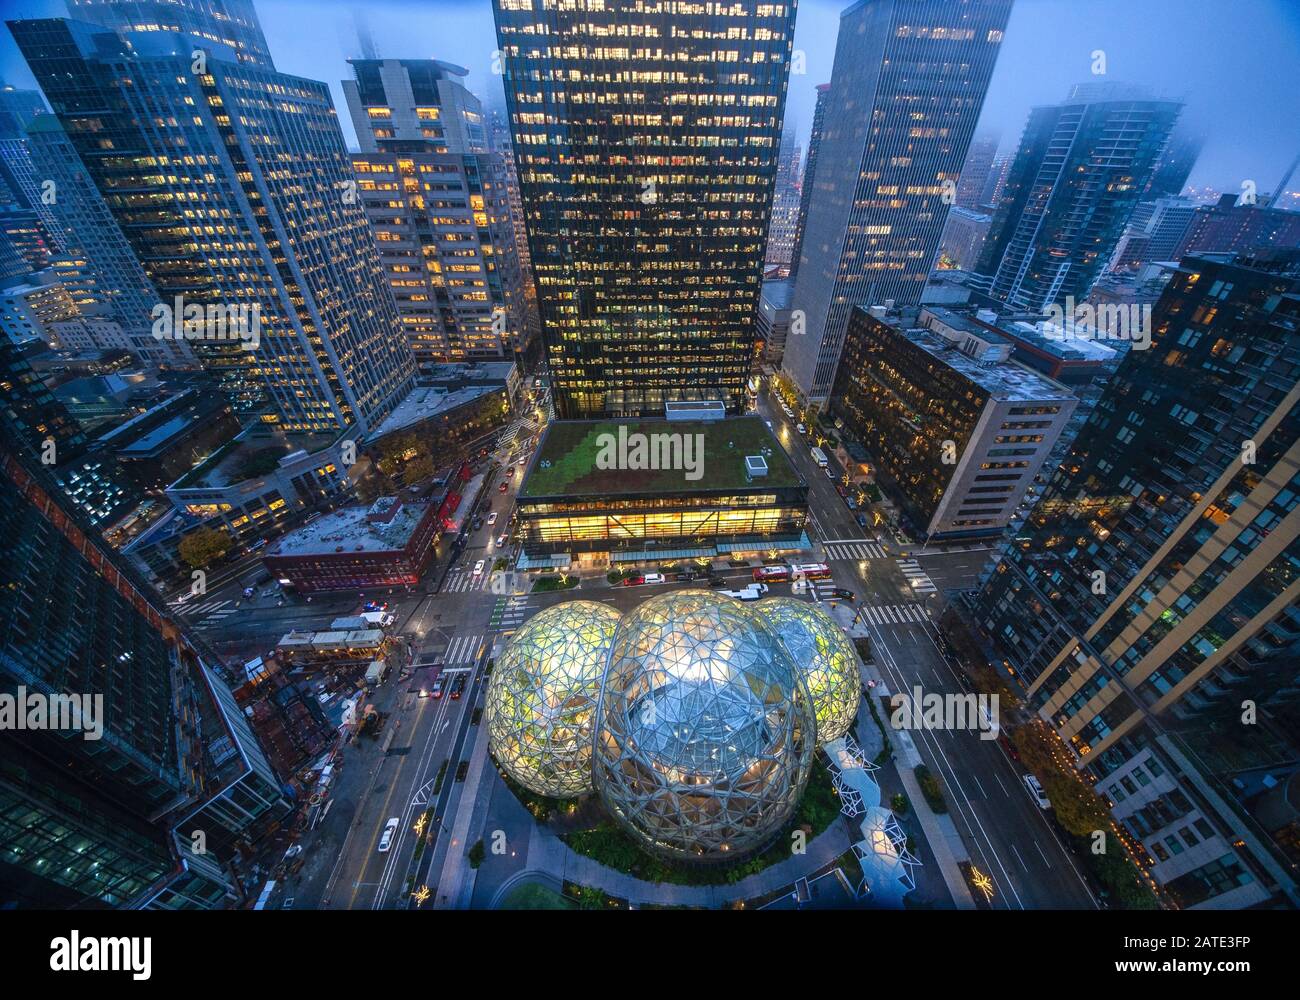 22.12.2018 : Luftbild der Amazon Sphären am Hauptsitz in Seattle und Bürotürme in der Innenstadt von Seattle, WA D.C USA Stockfoto